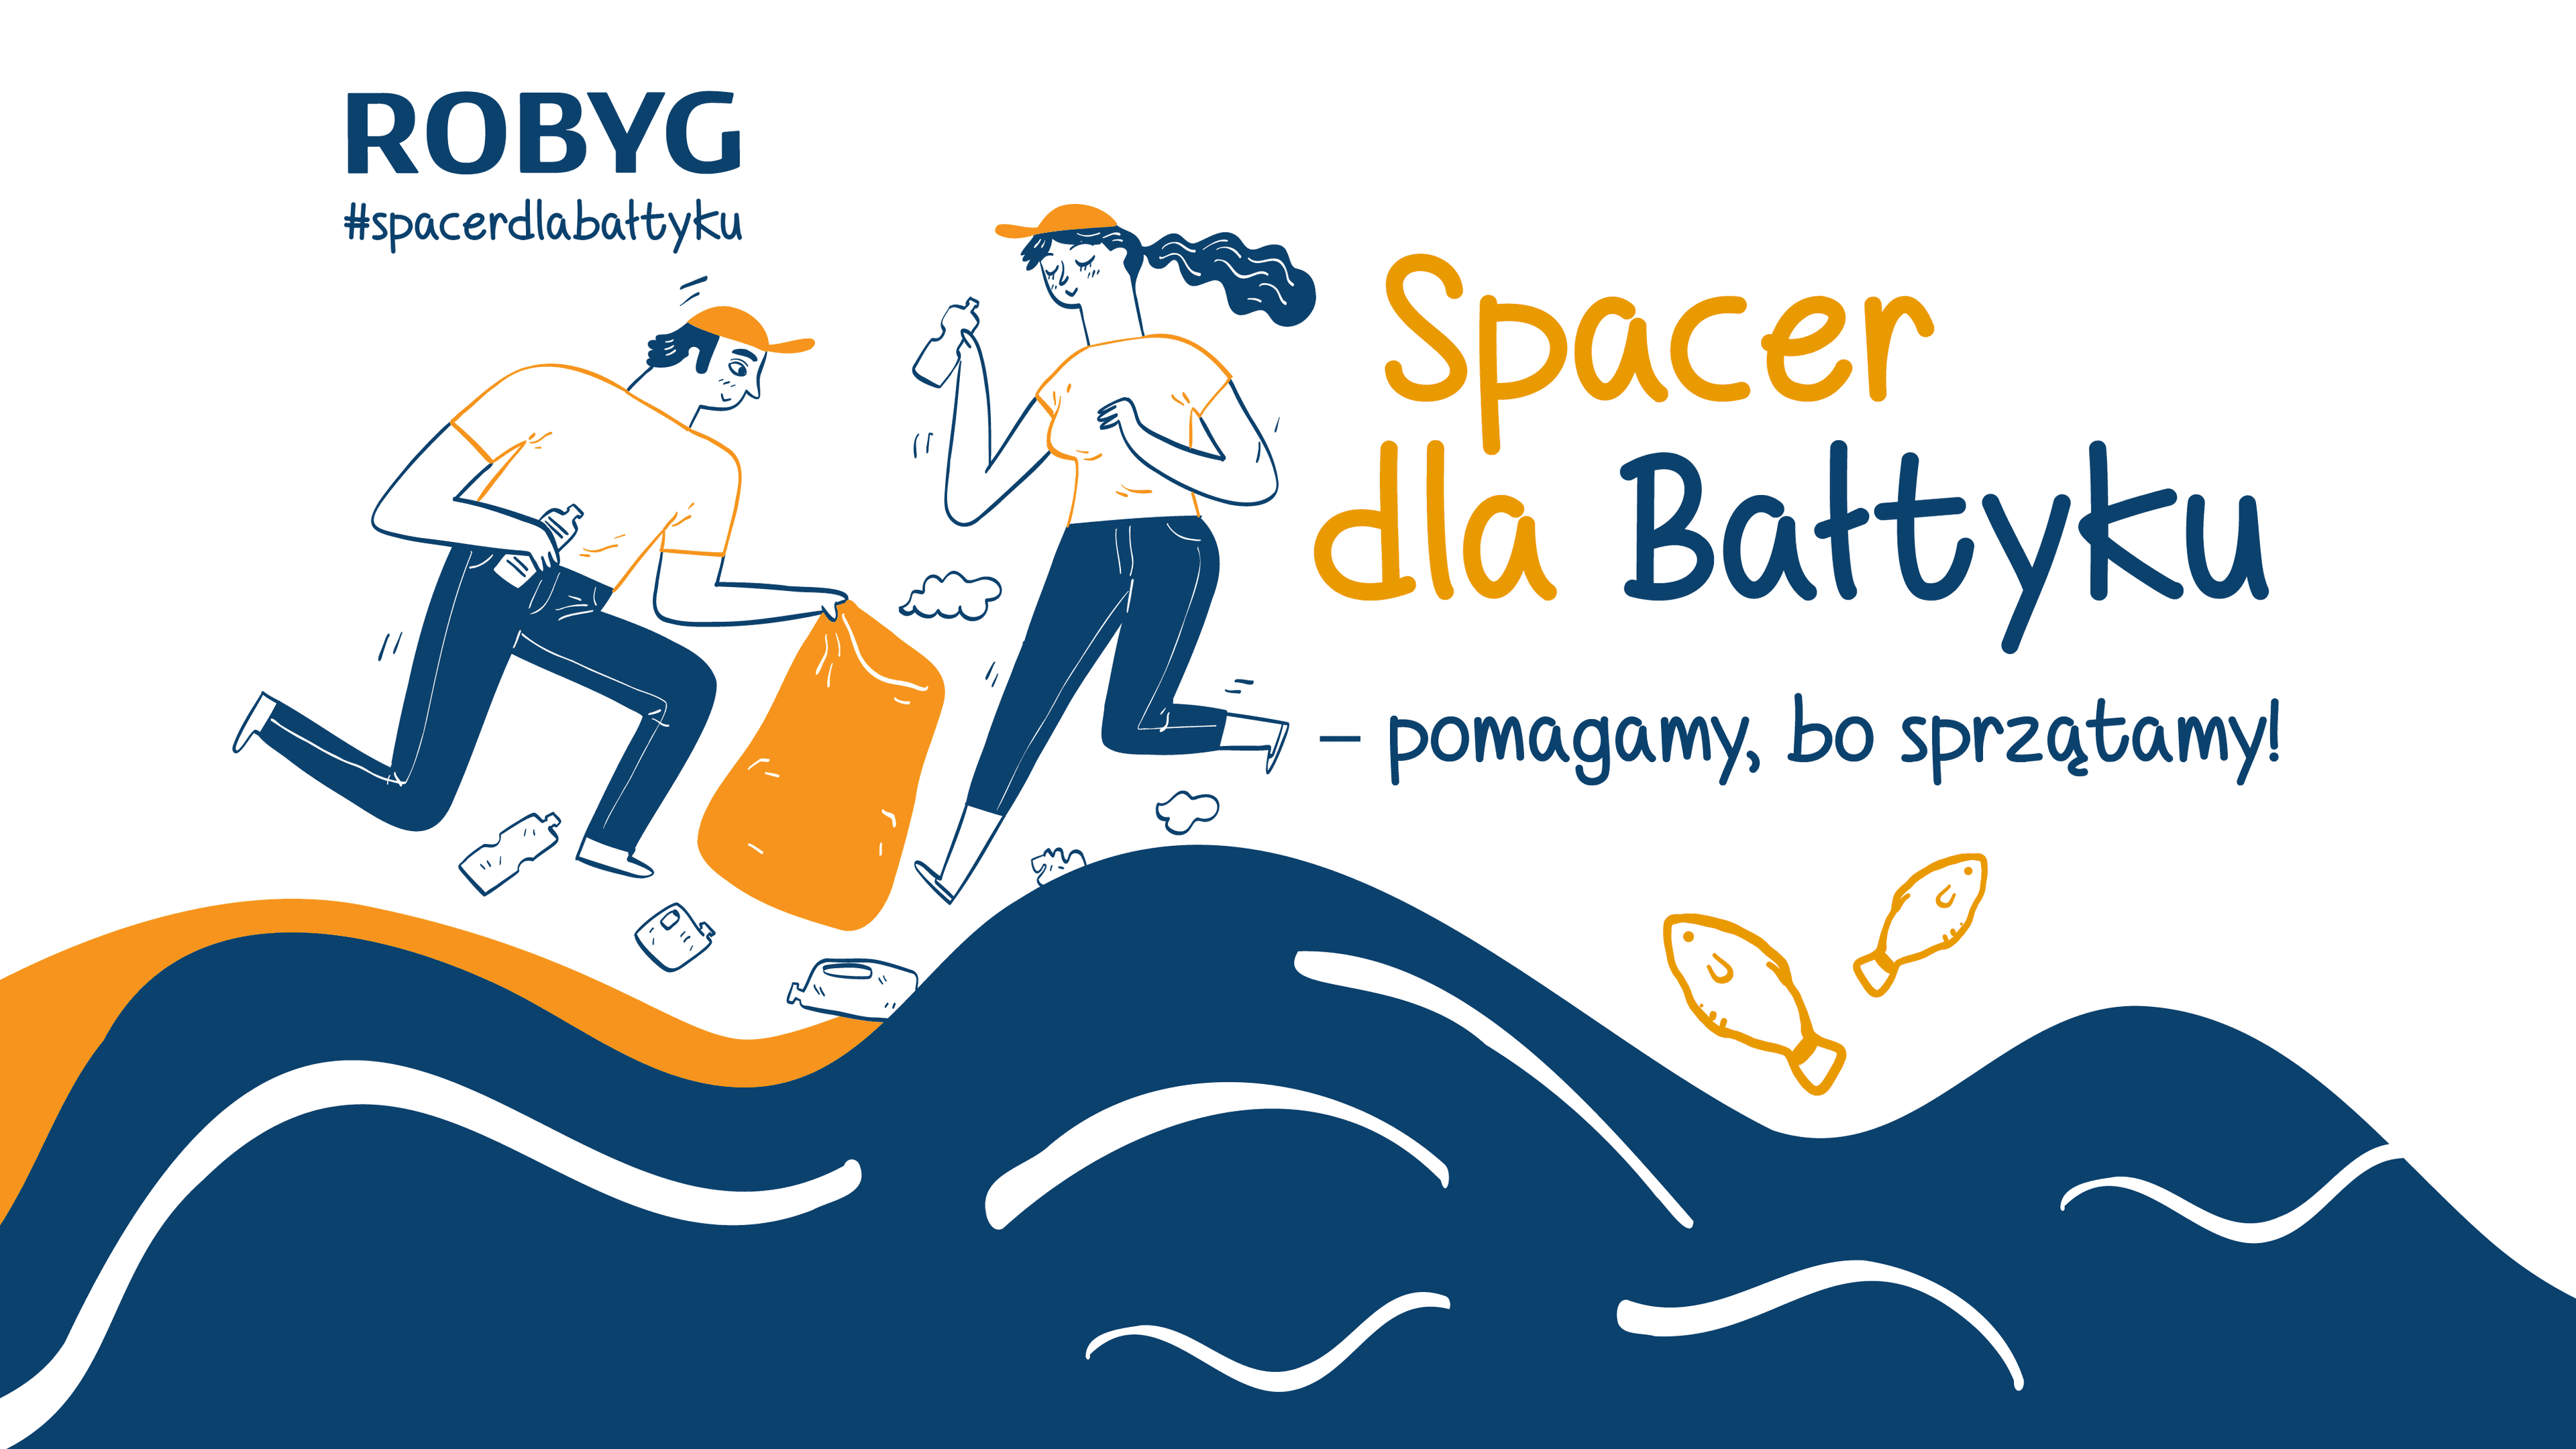  Spacer dla Bałtyku – ROBYG zachęca do zbierania śmieci z plaży i edukuje w zakresie wody